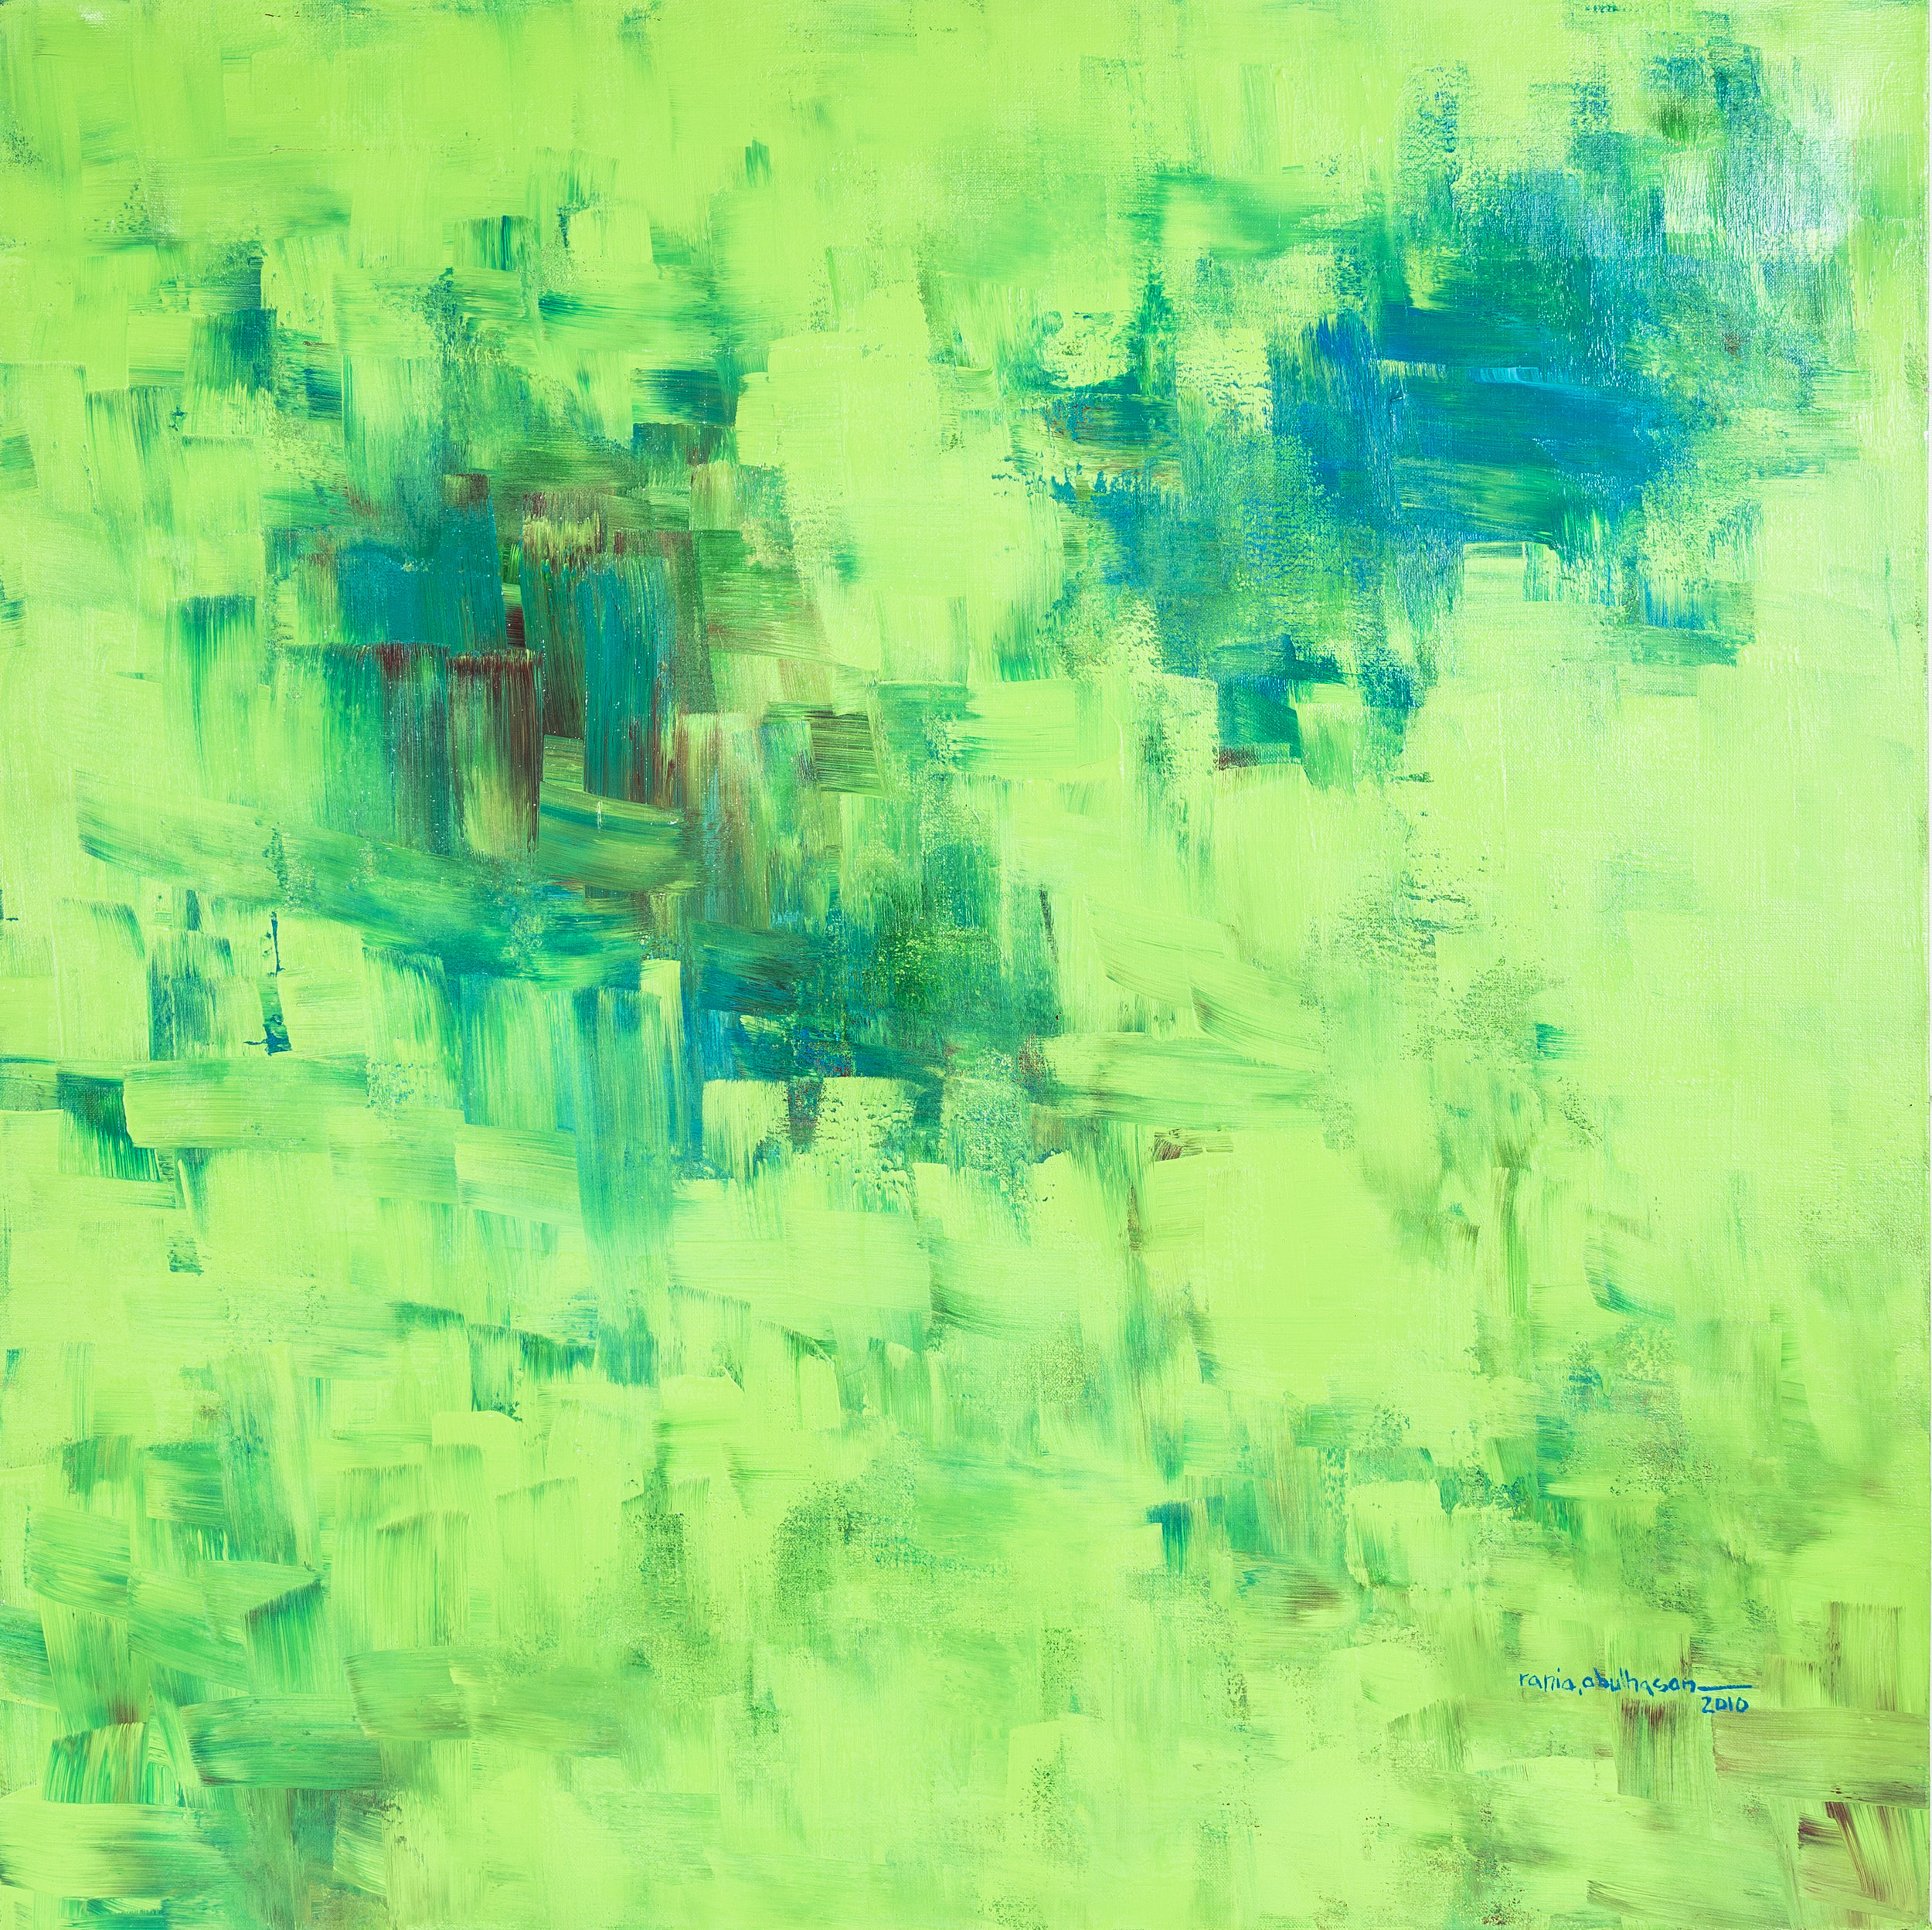    “A Face On a Green Field”   - Acrylic on canvas. 120 x 120 cm   